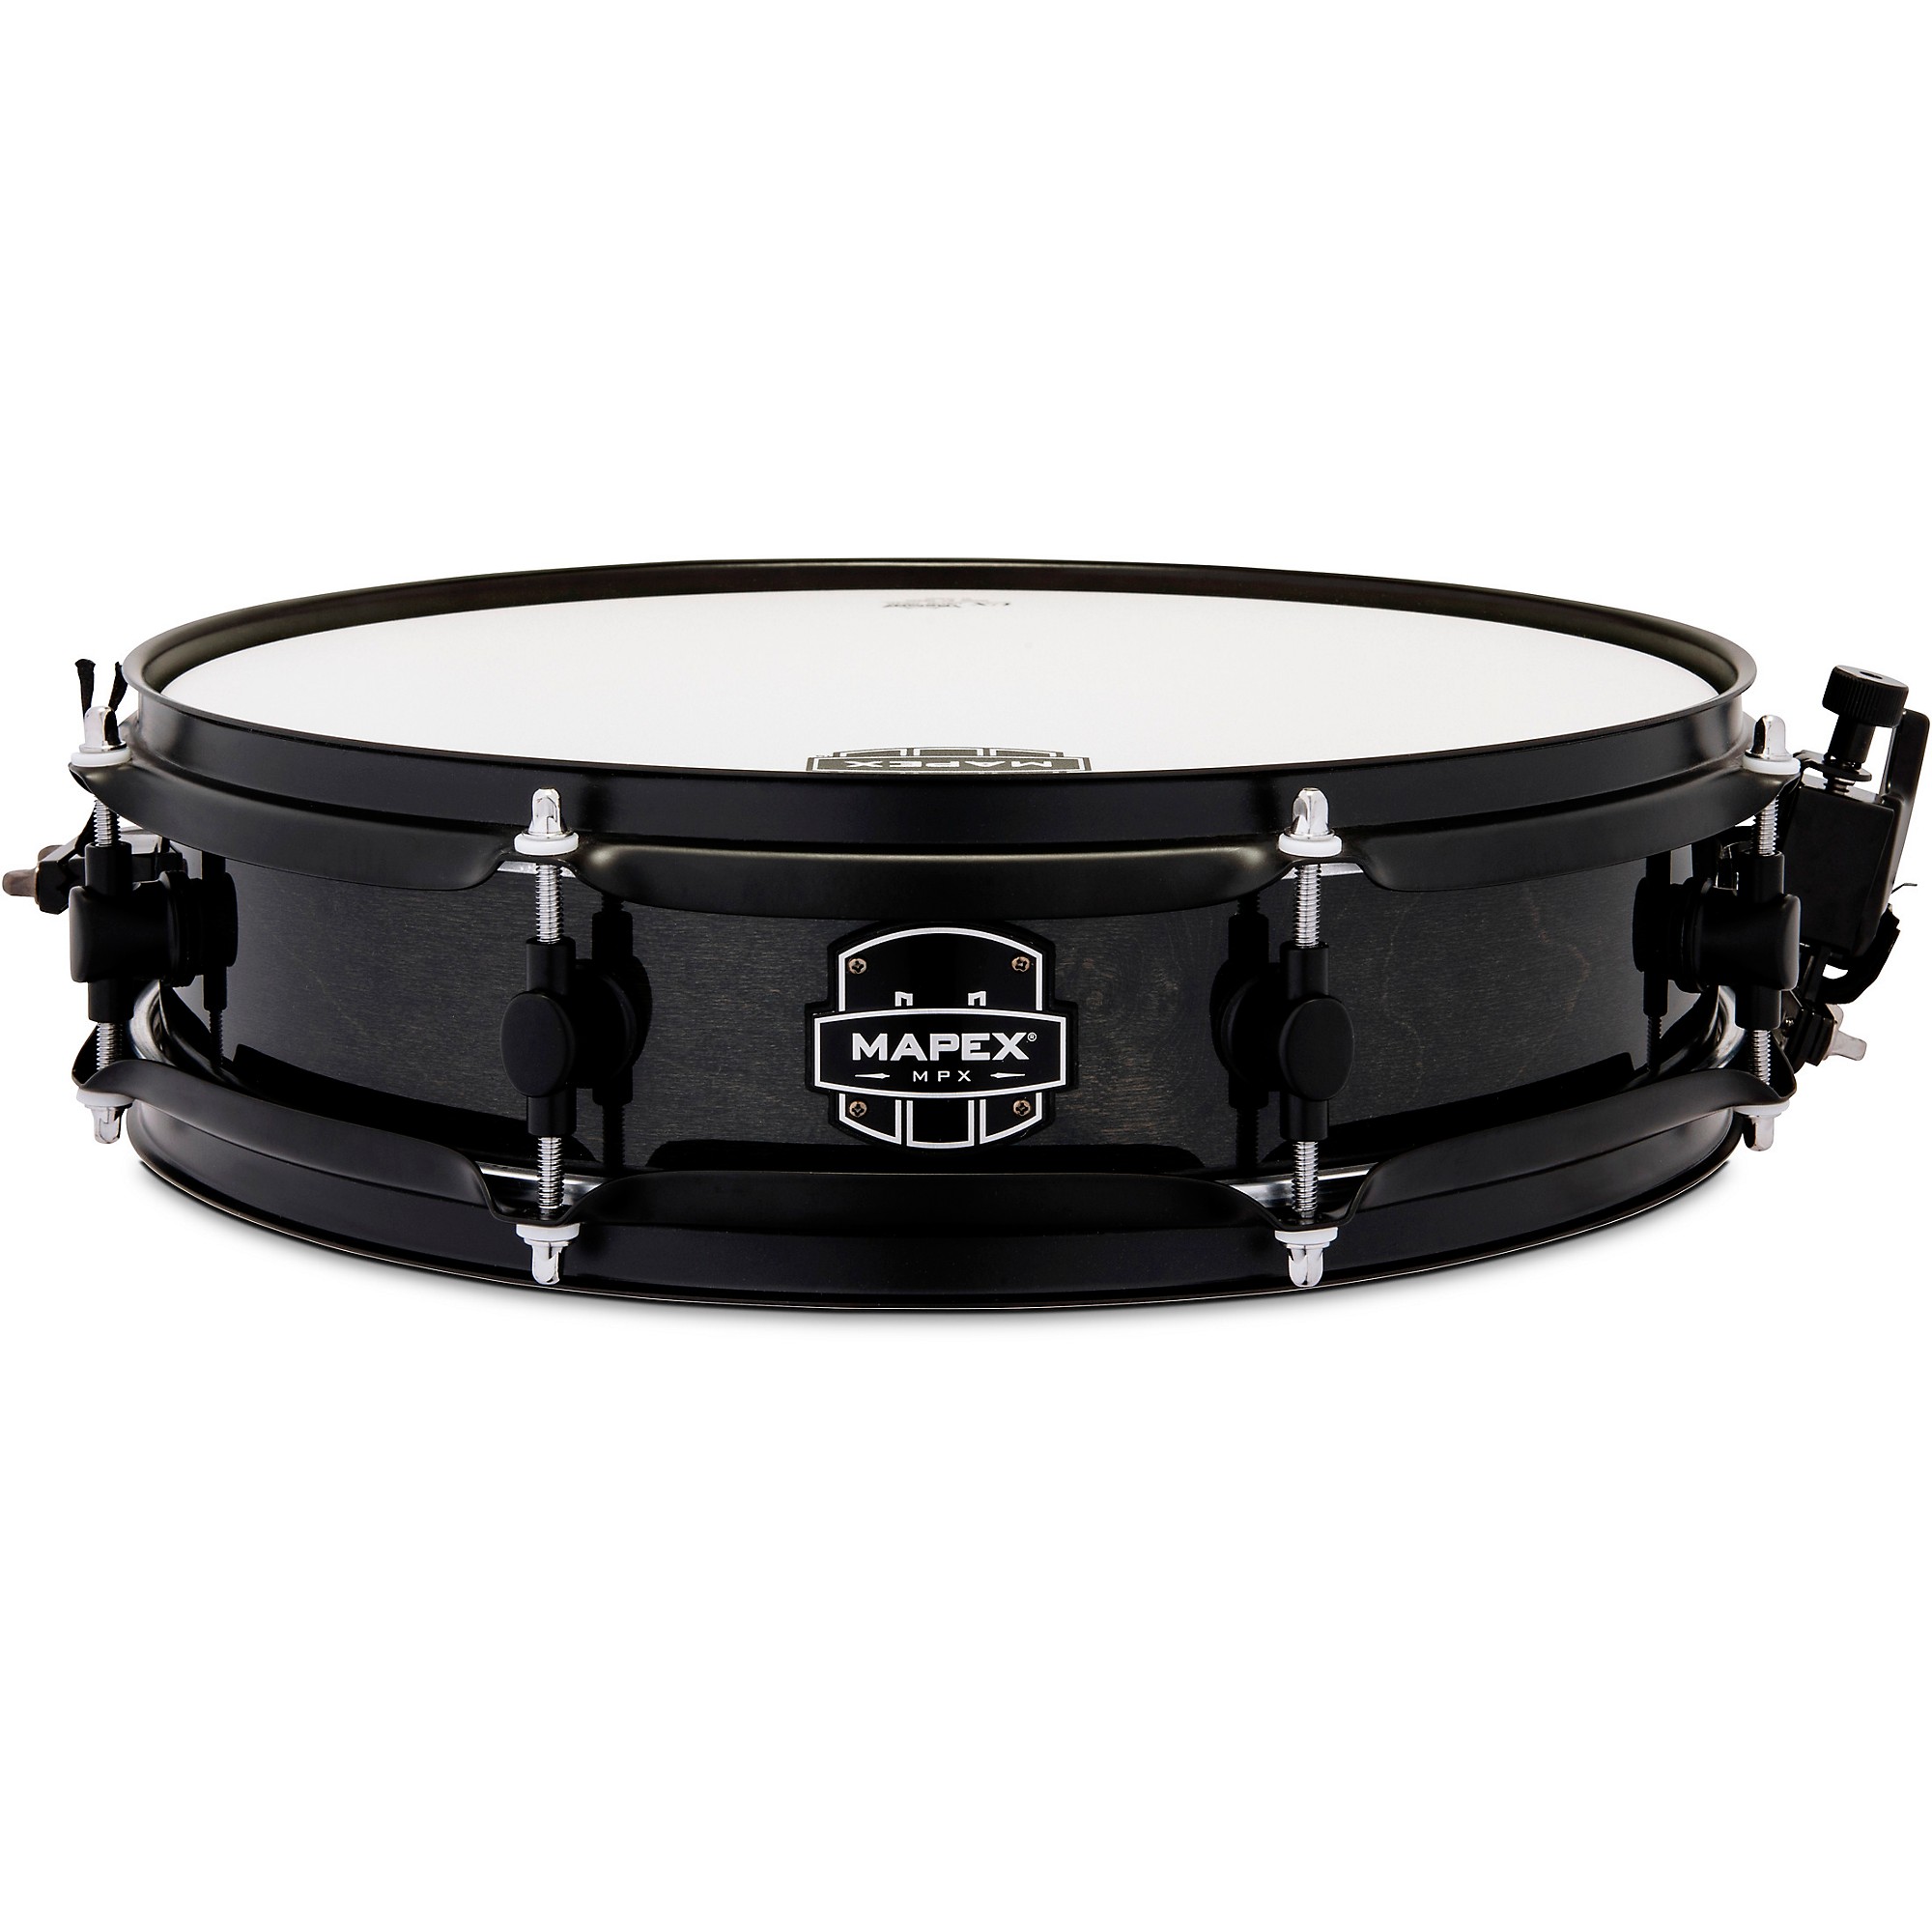 Pearl Maple Piccolo Snare Drum – Lander's Music Store